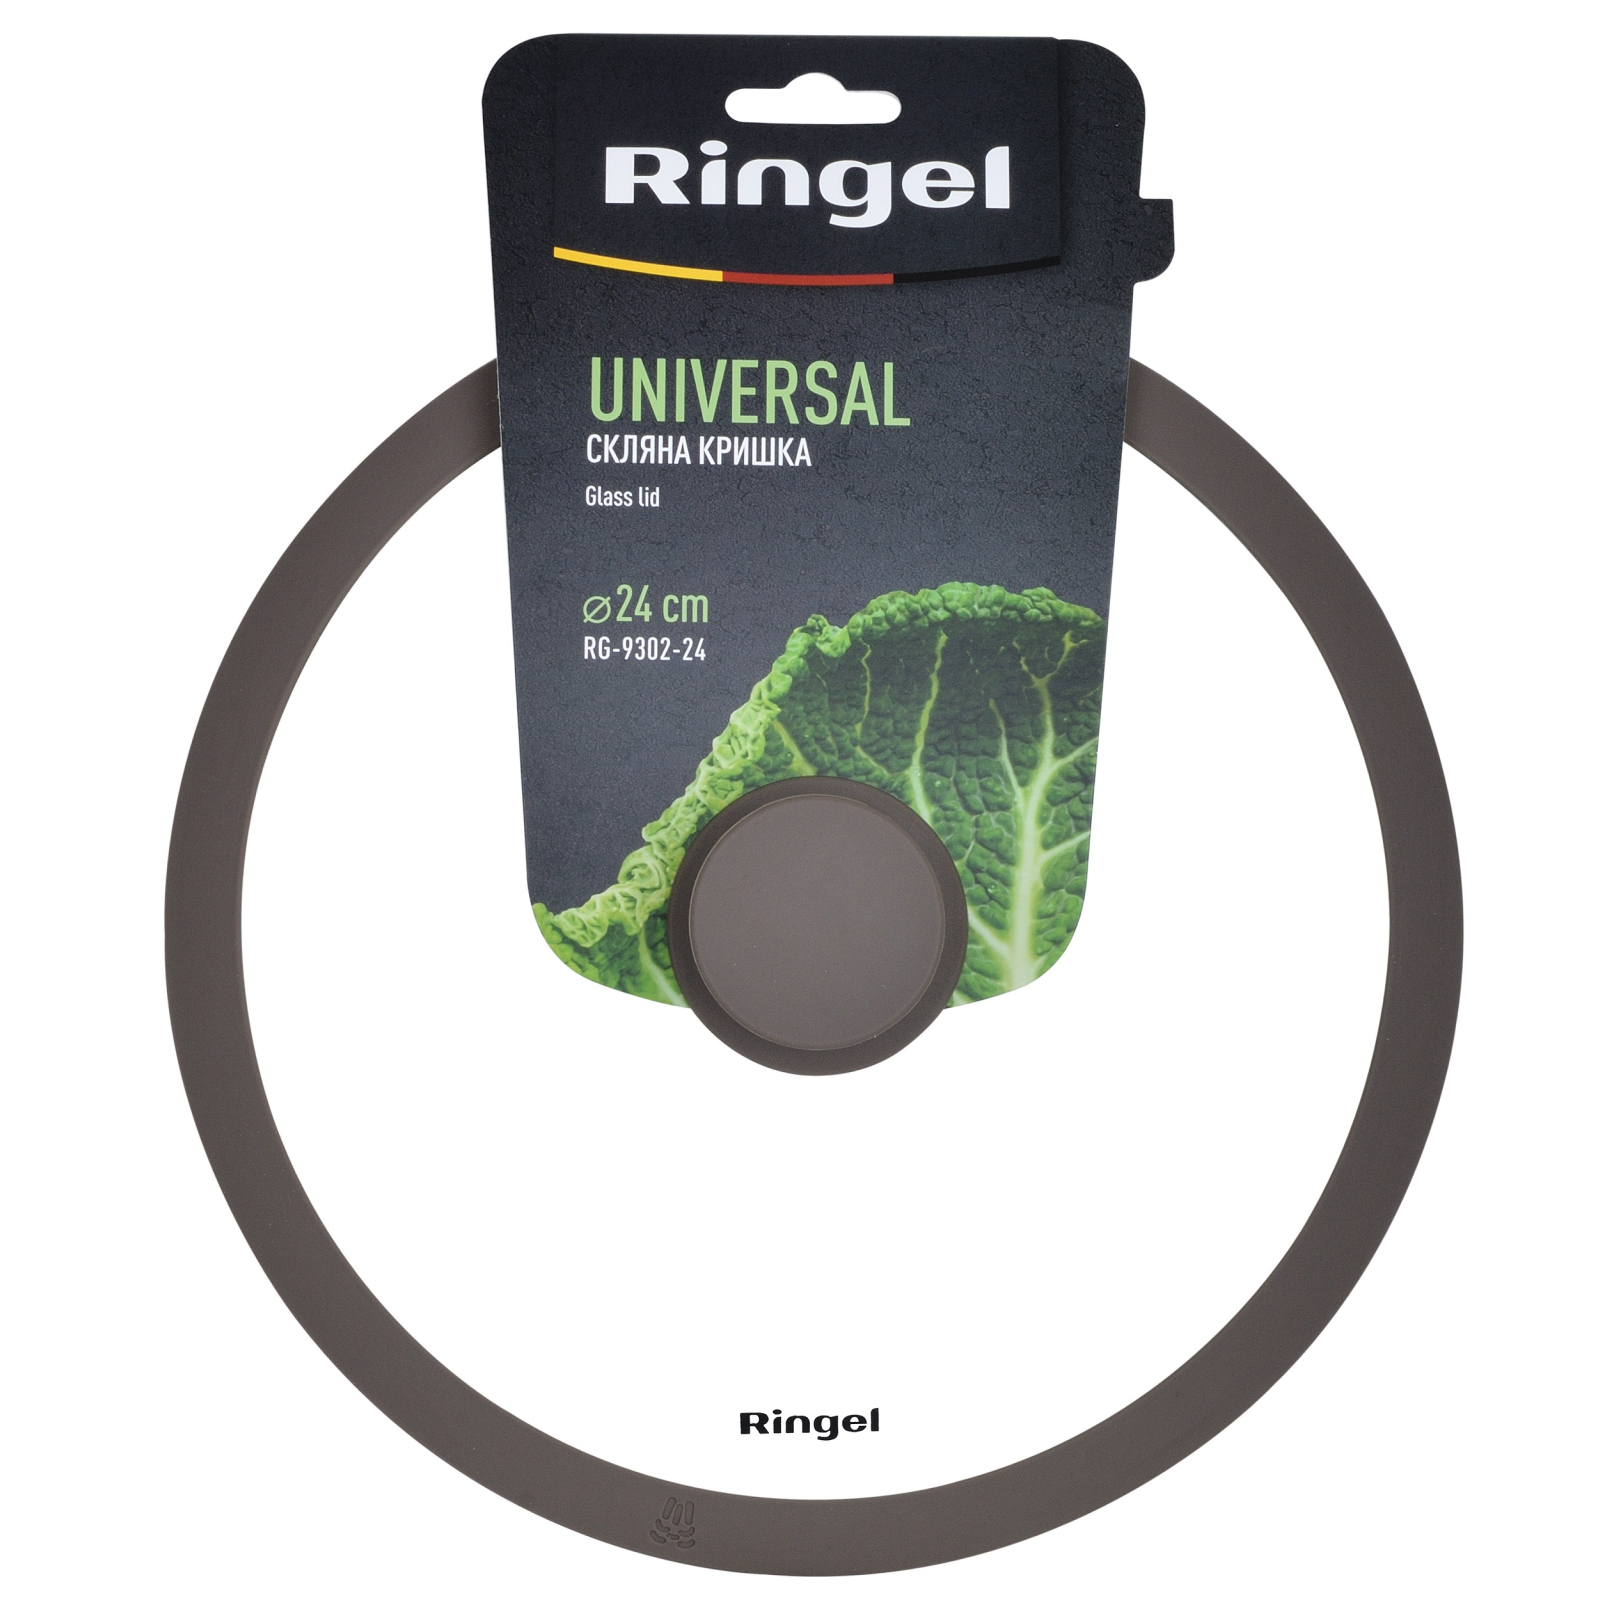 Крышка для посуды Ringel Universal silicone 24 см (RG-9302-24) изображение 3